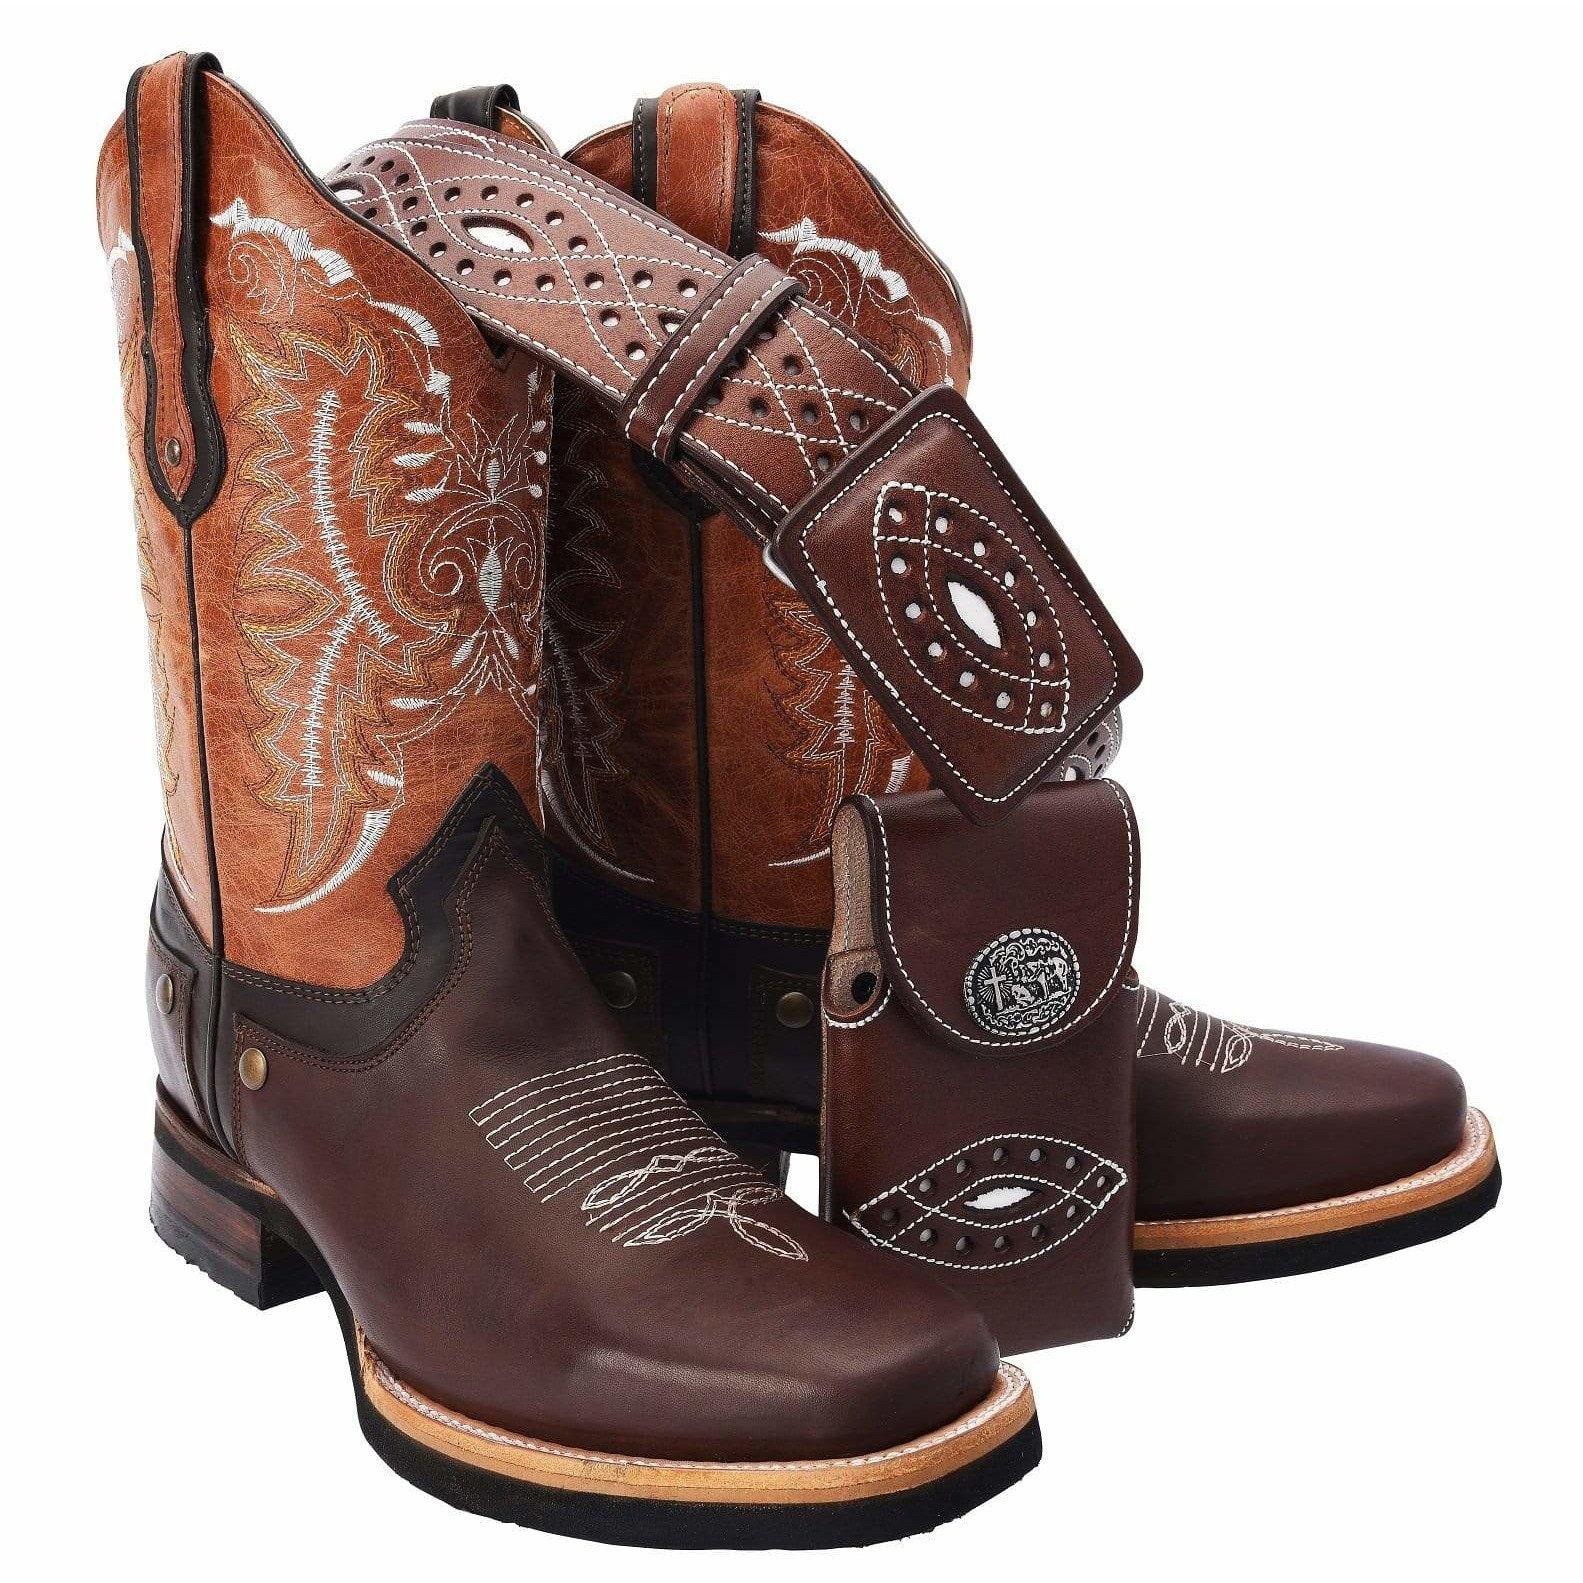 Men's Western Boot/botas Hombre rodeo -